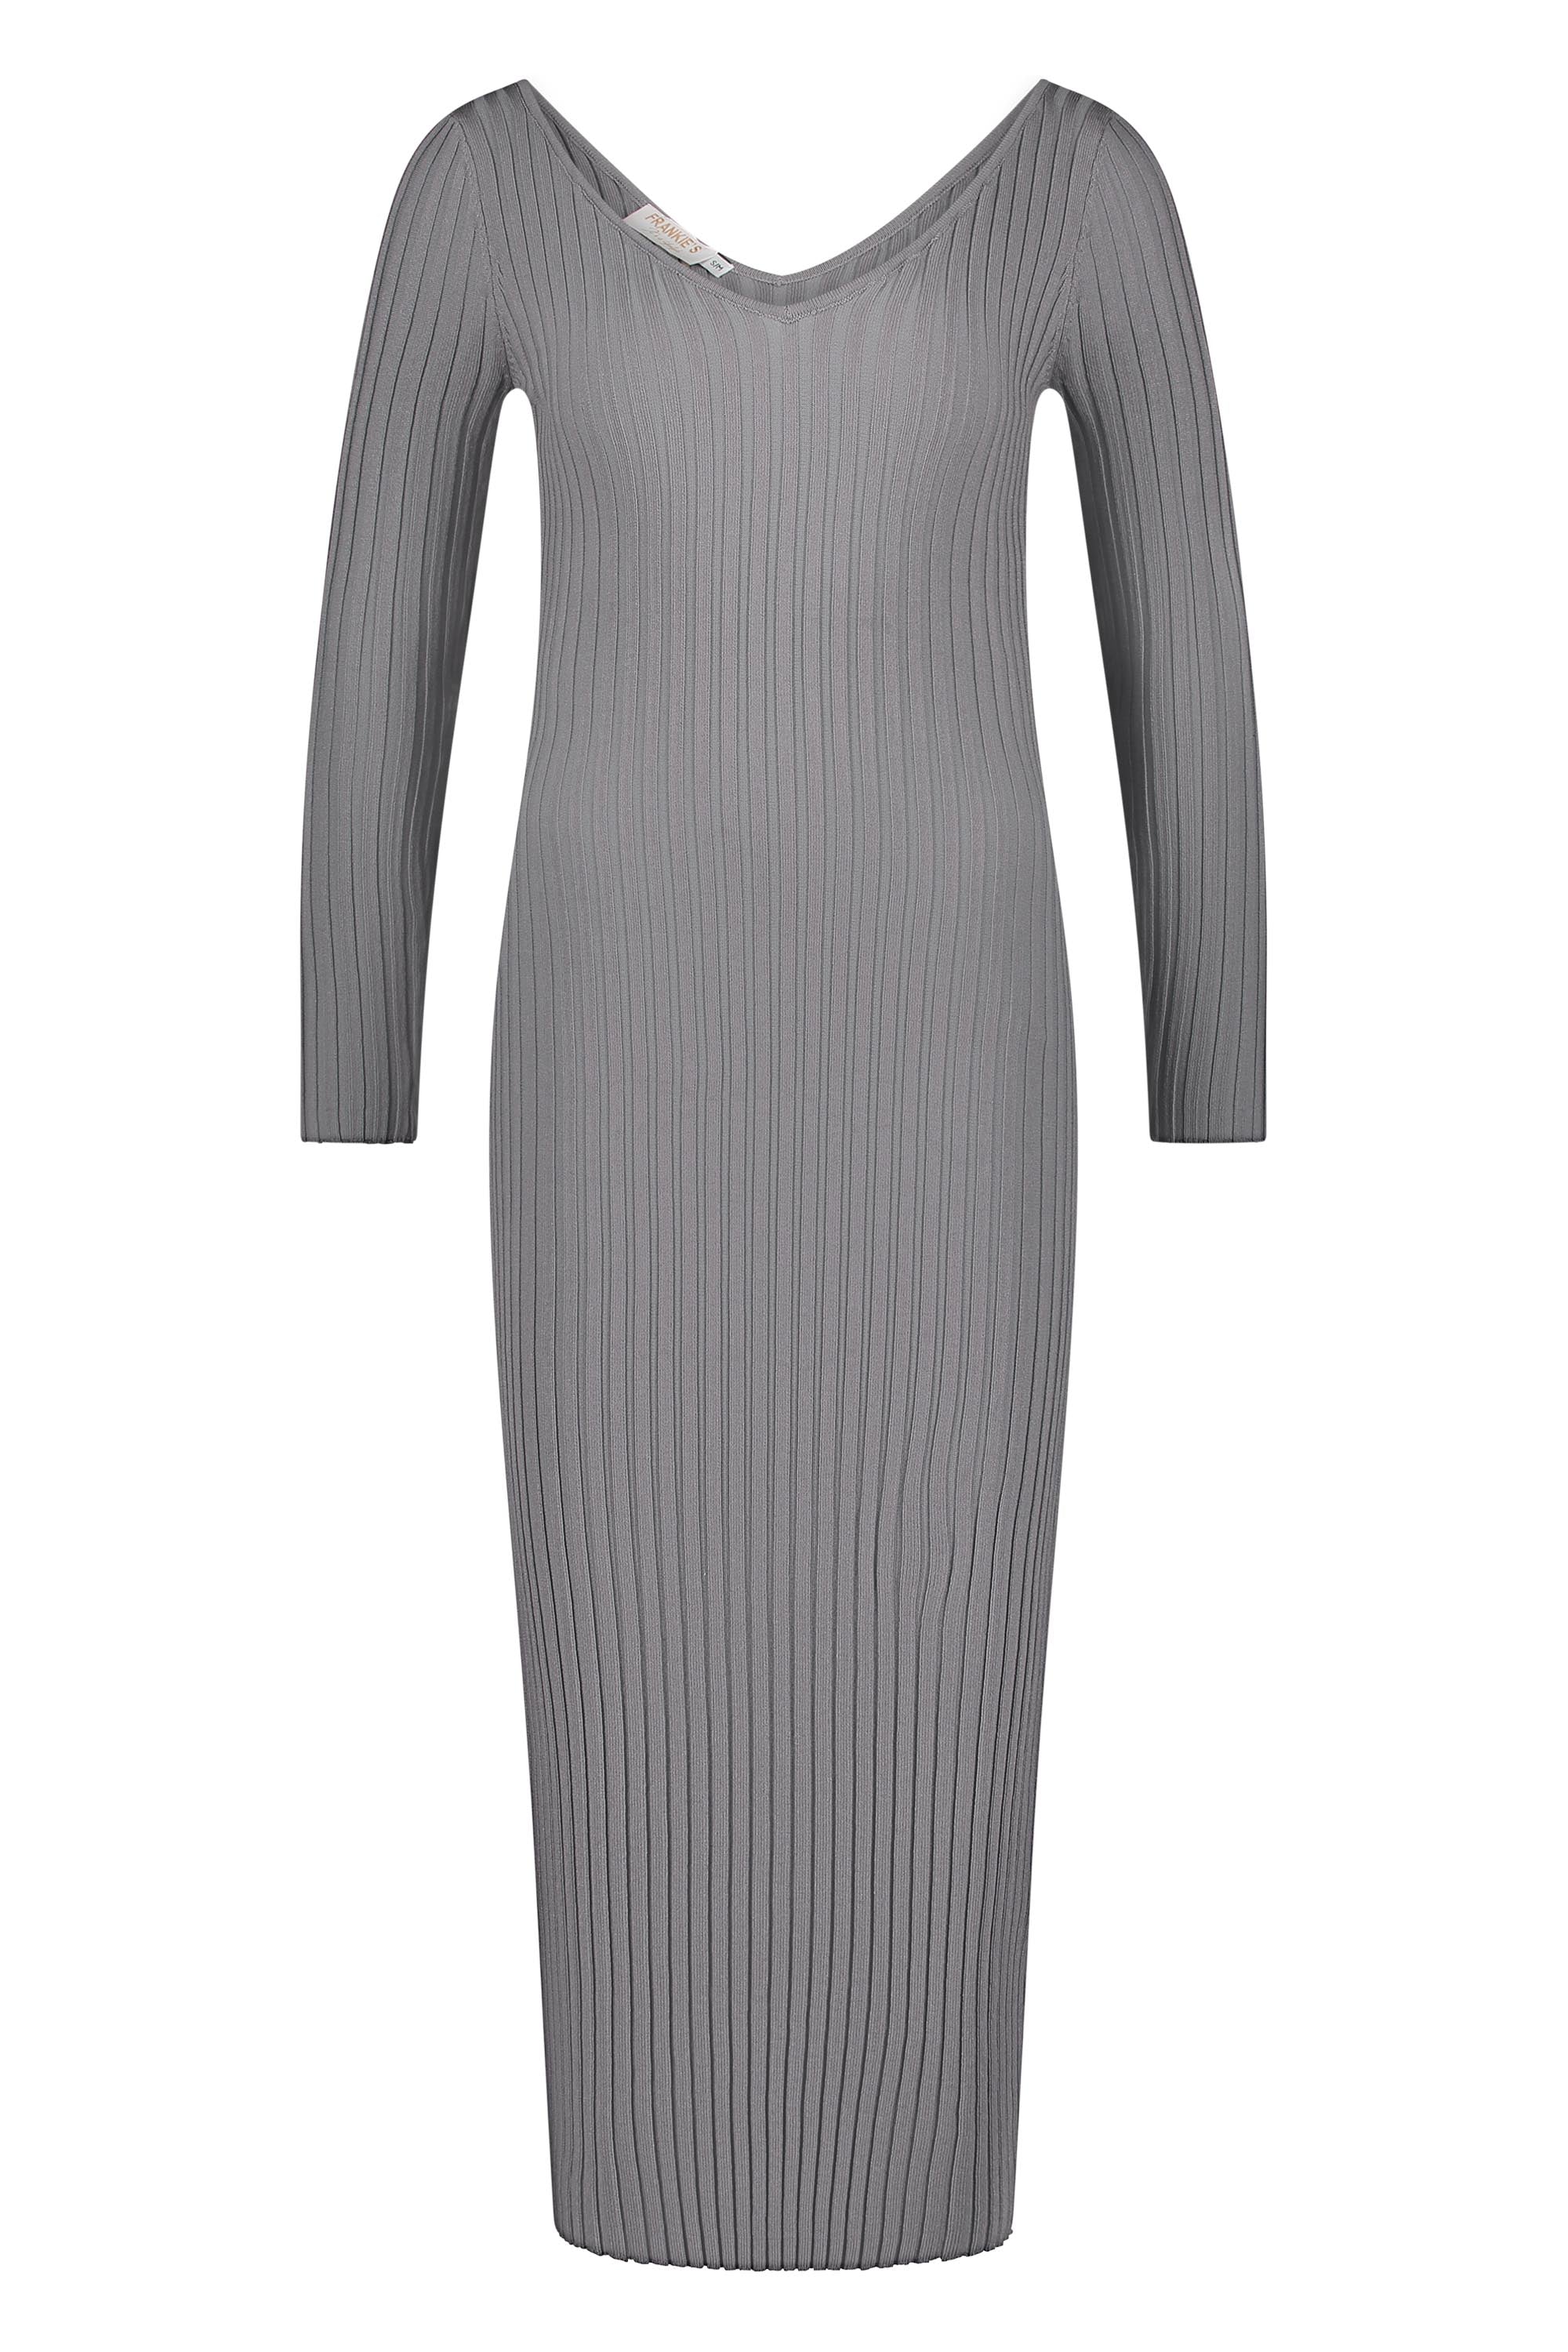 Dress knitwear long sleeve grey